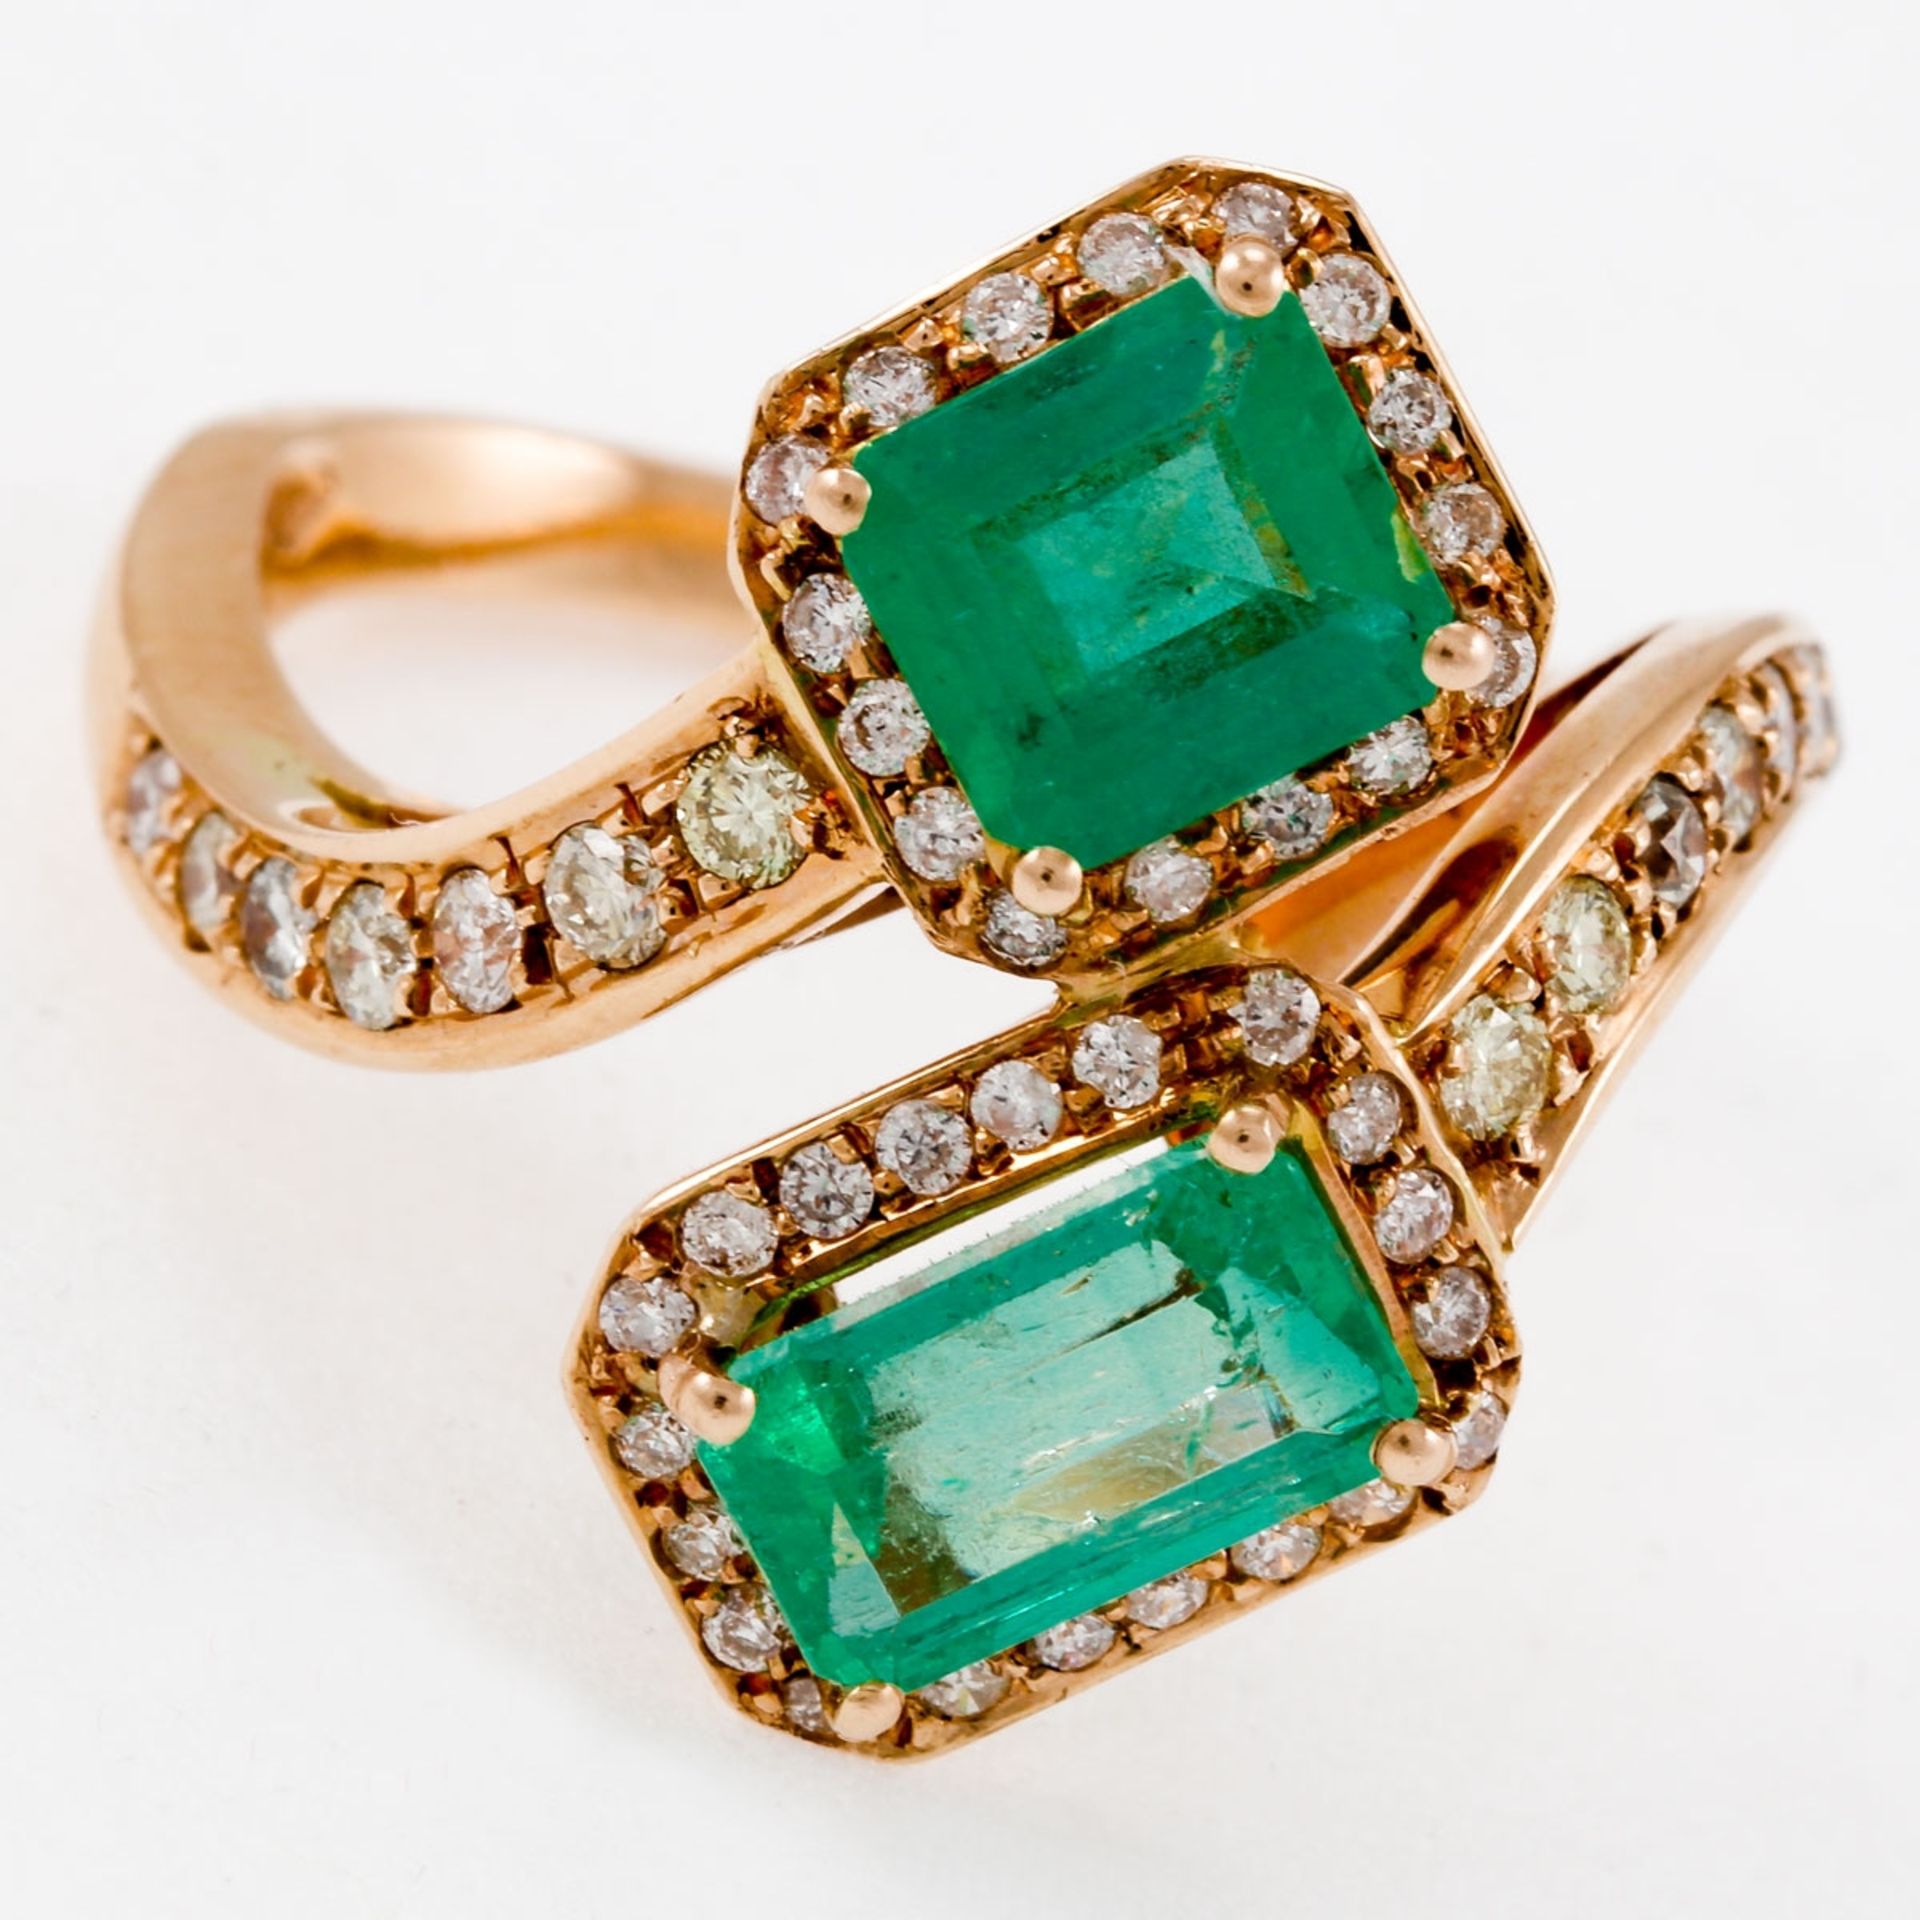 Toi-et-Moi Ring mit Smaragden und Brillanten 585/- Roségold, gestemp. Gewicht: 6,3 g. 2 Smar